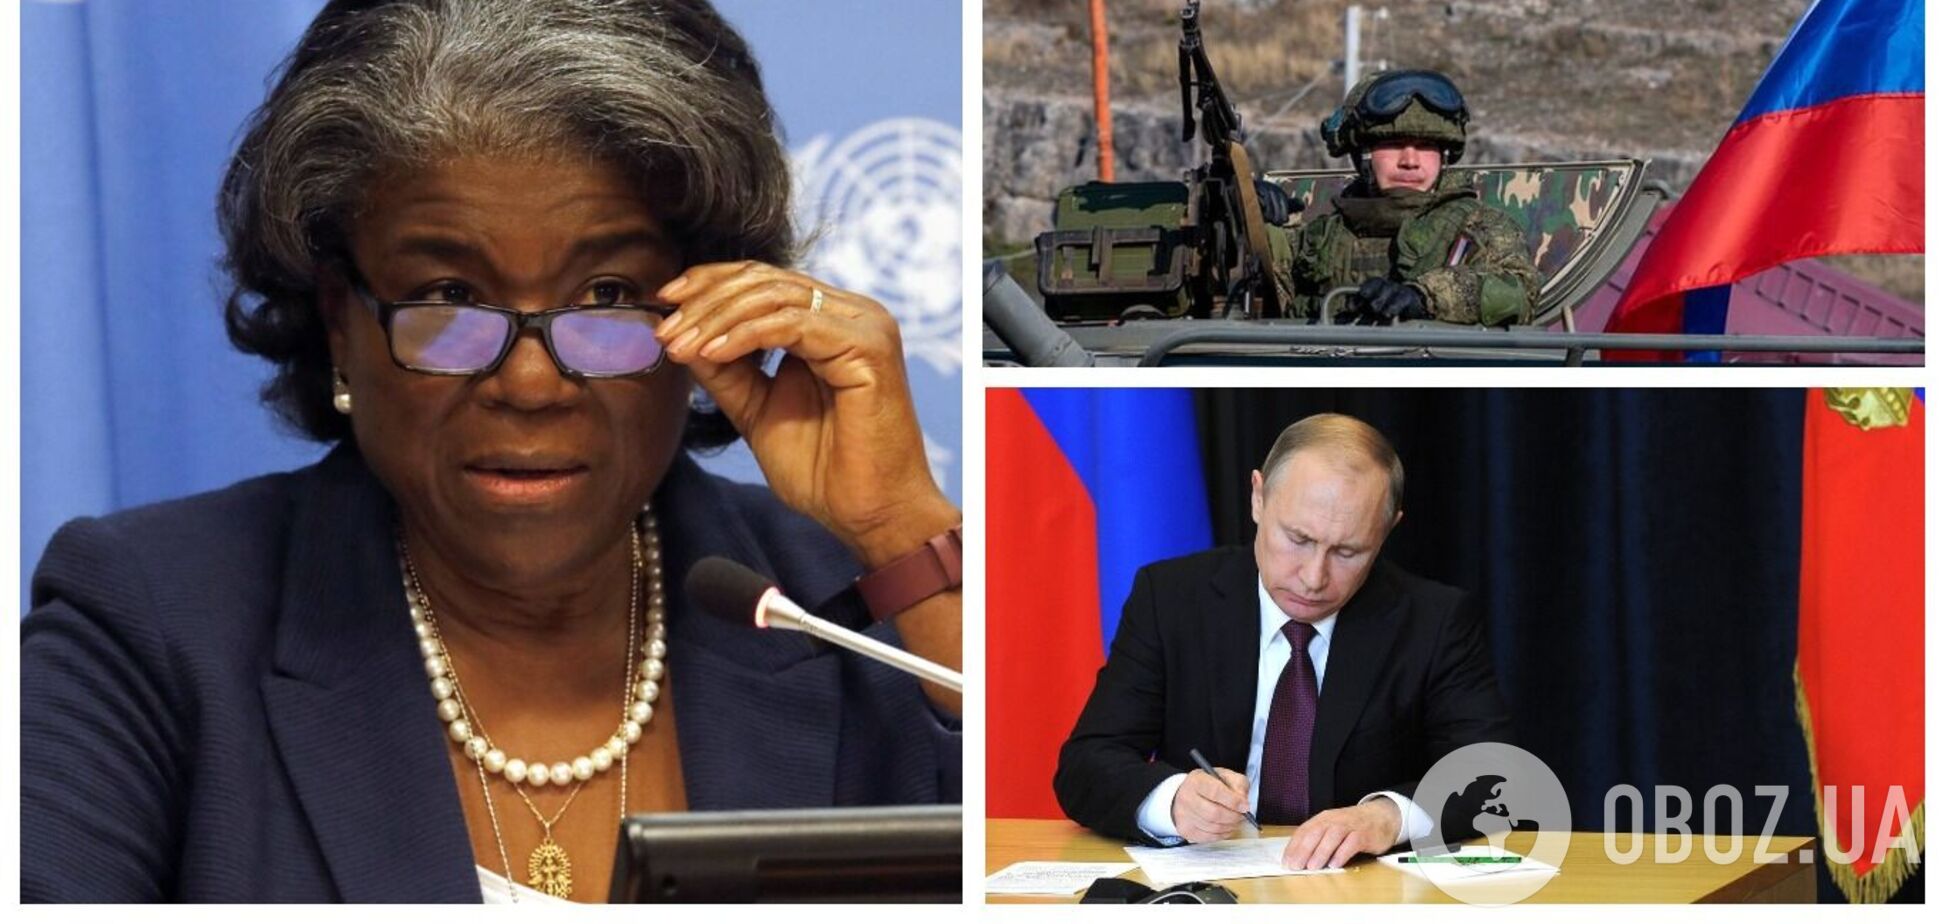 Наслідки будуть жахливими для всього світу: у США відреагували на заяву РФ про введення військ на Донбас